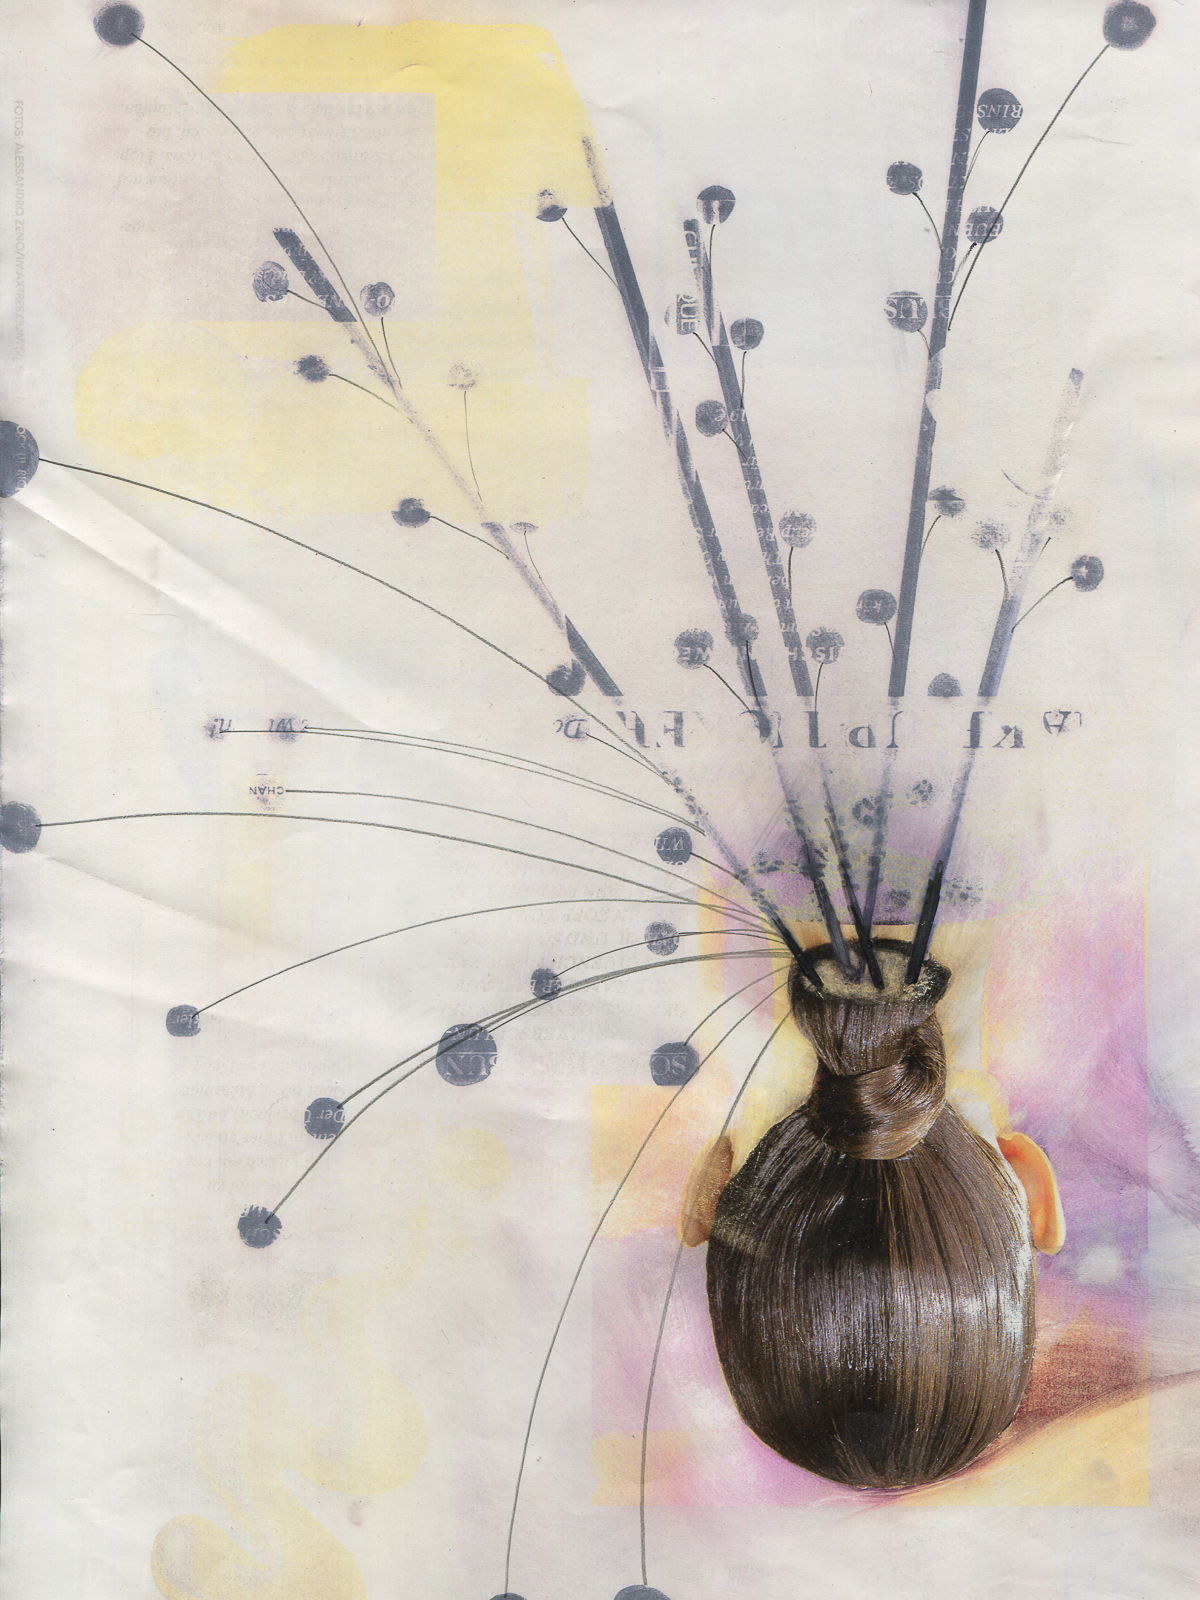 "Flow-er", 2017, lavenderoil, pencil, feltpen on magazine page, 19.5 x 27.5 cm 